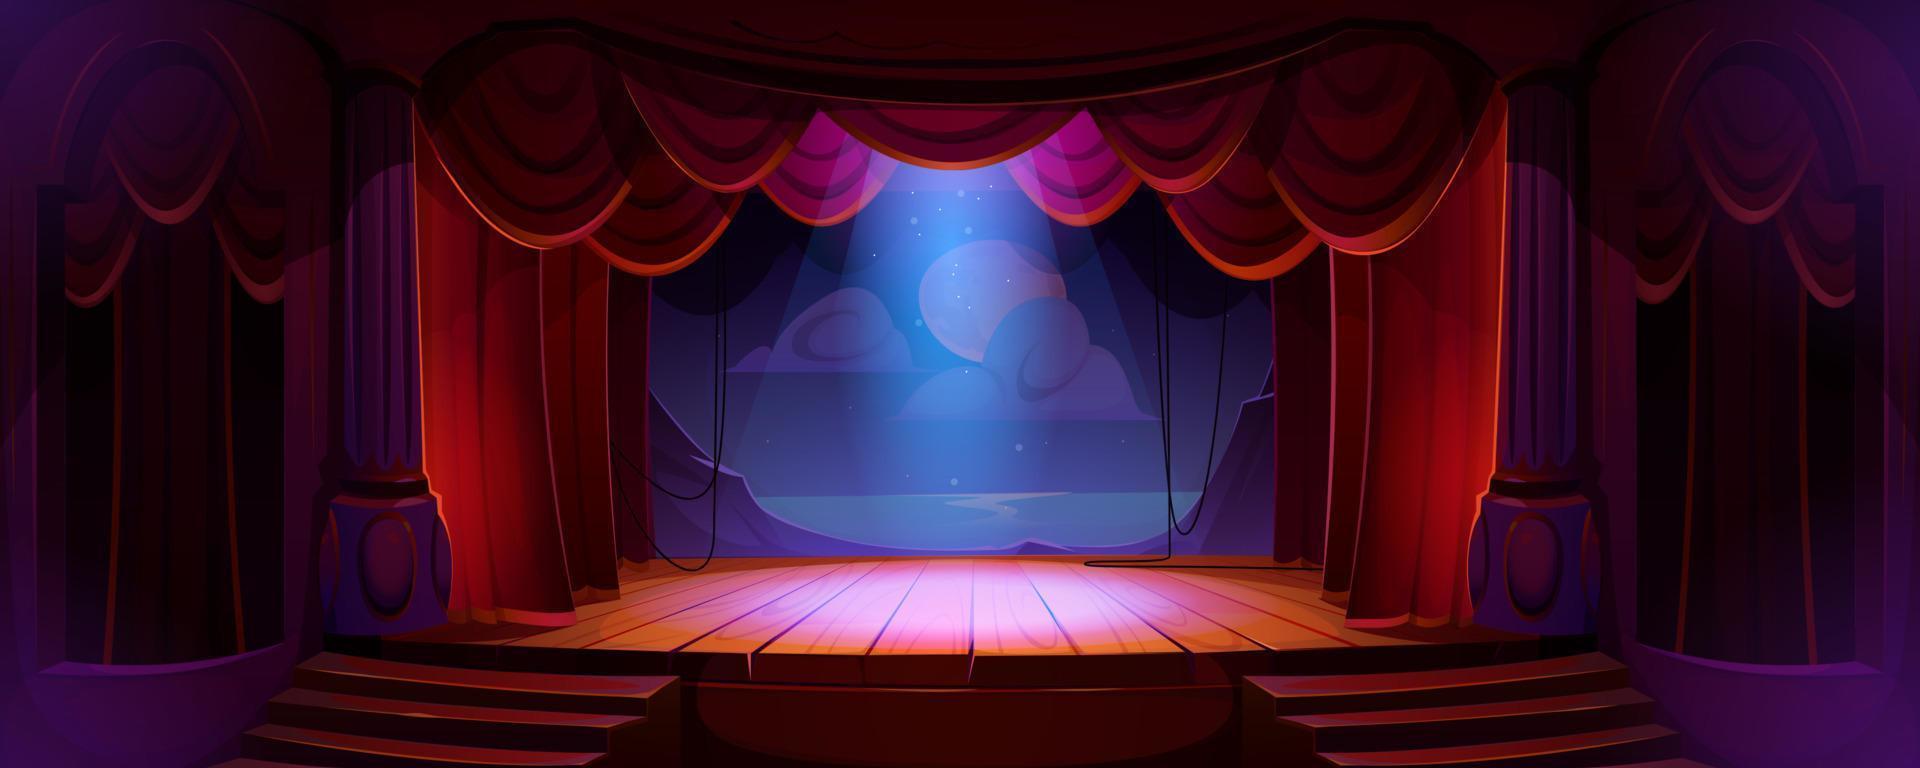 Teatro palcoscenico con rosso tende, faretti, arredamento vettore